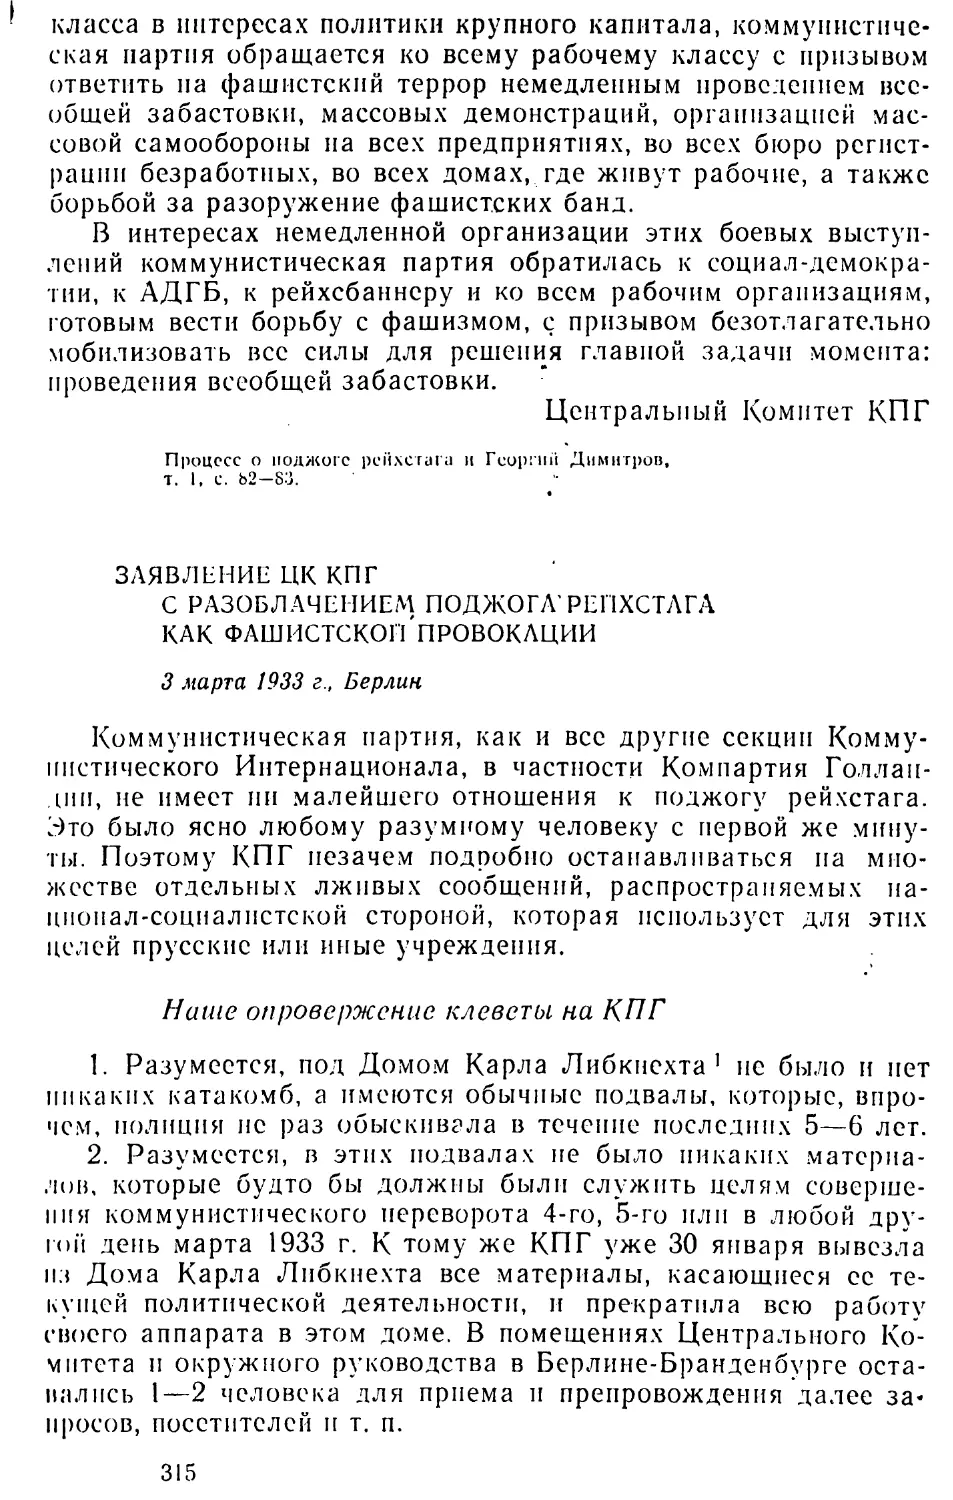 Заявление ЦК КПГ с разоблачением поджога рейхстага как фашистской провокации. 3 марта 1933 г